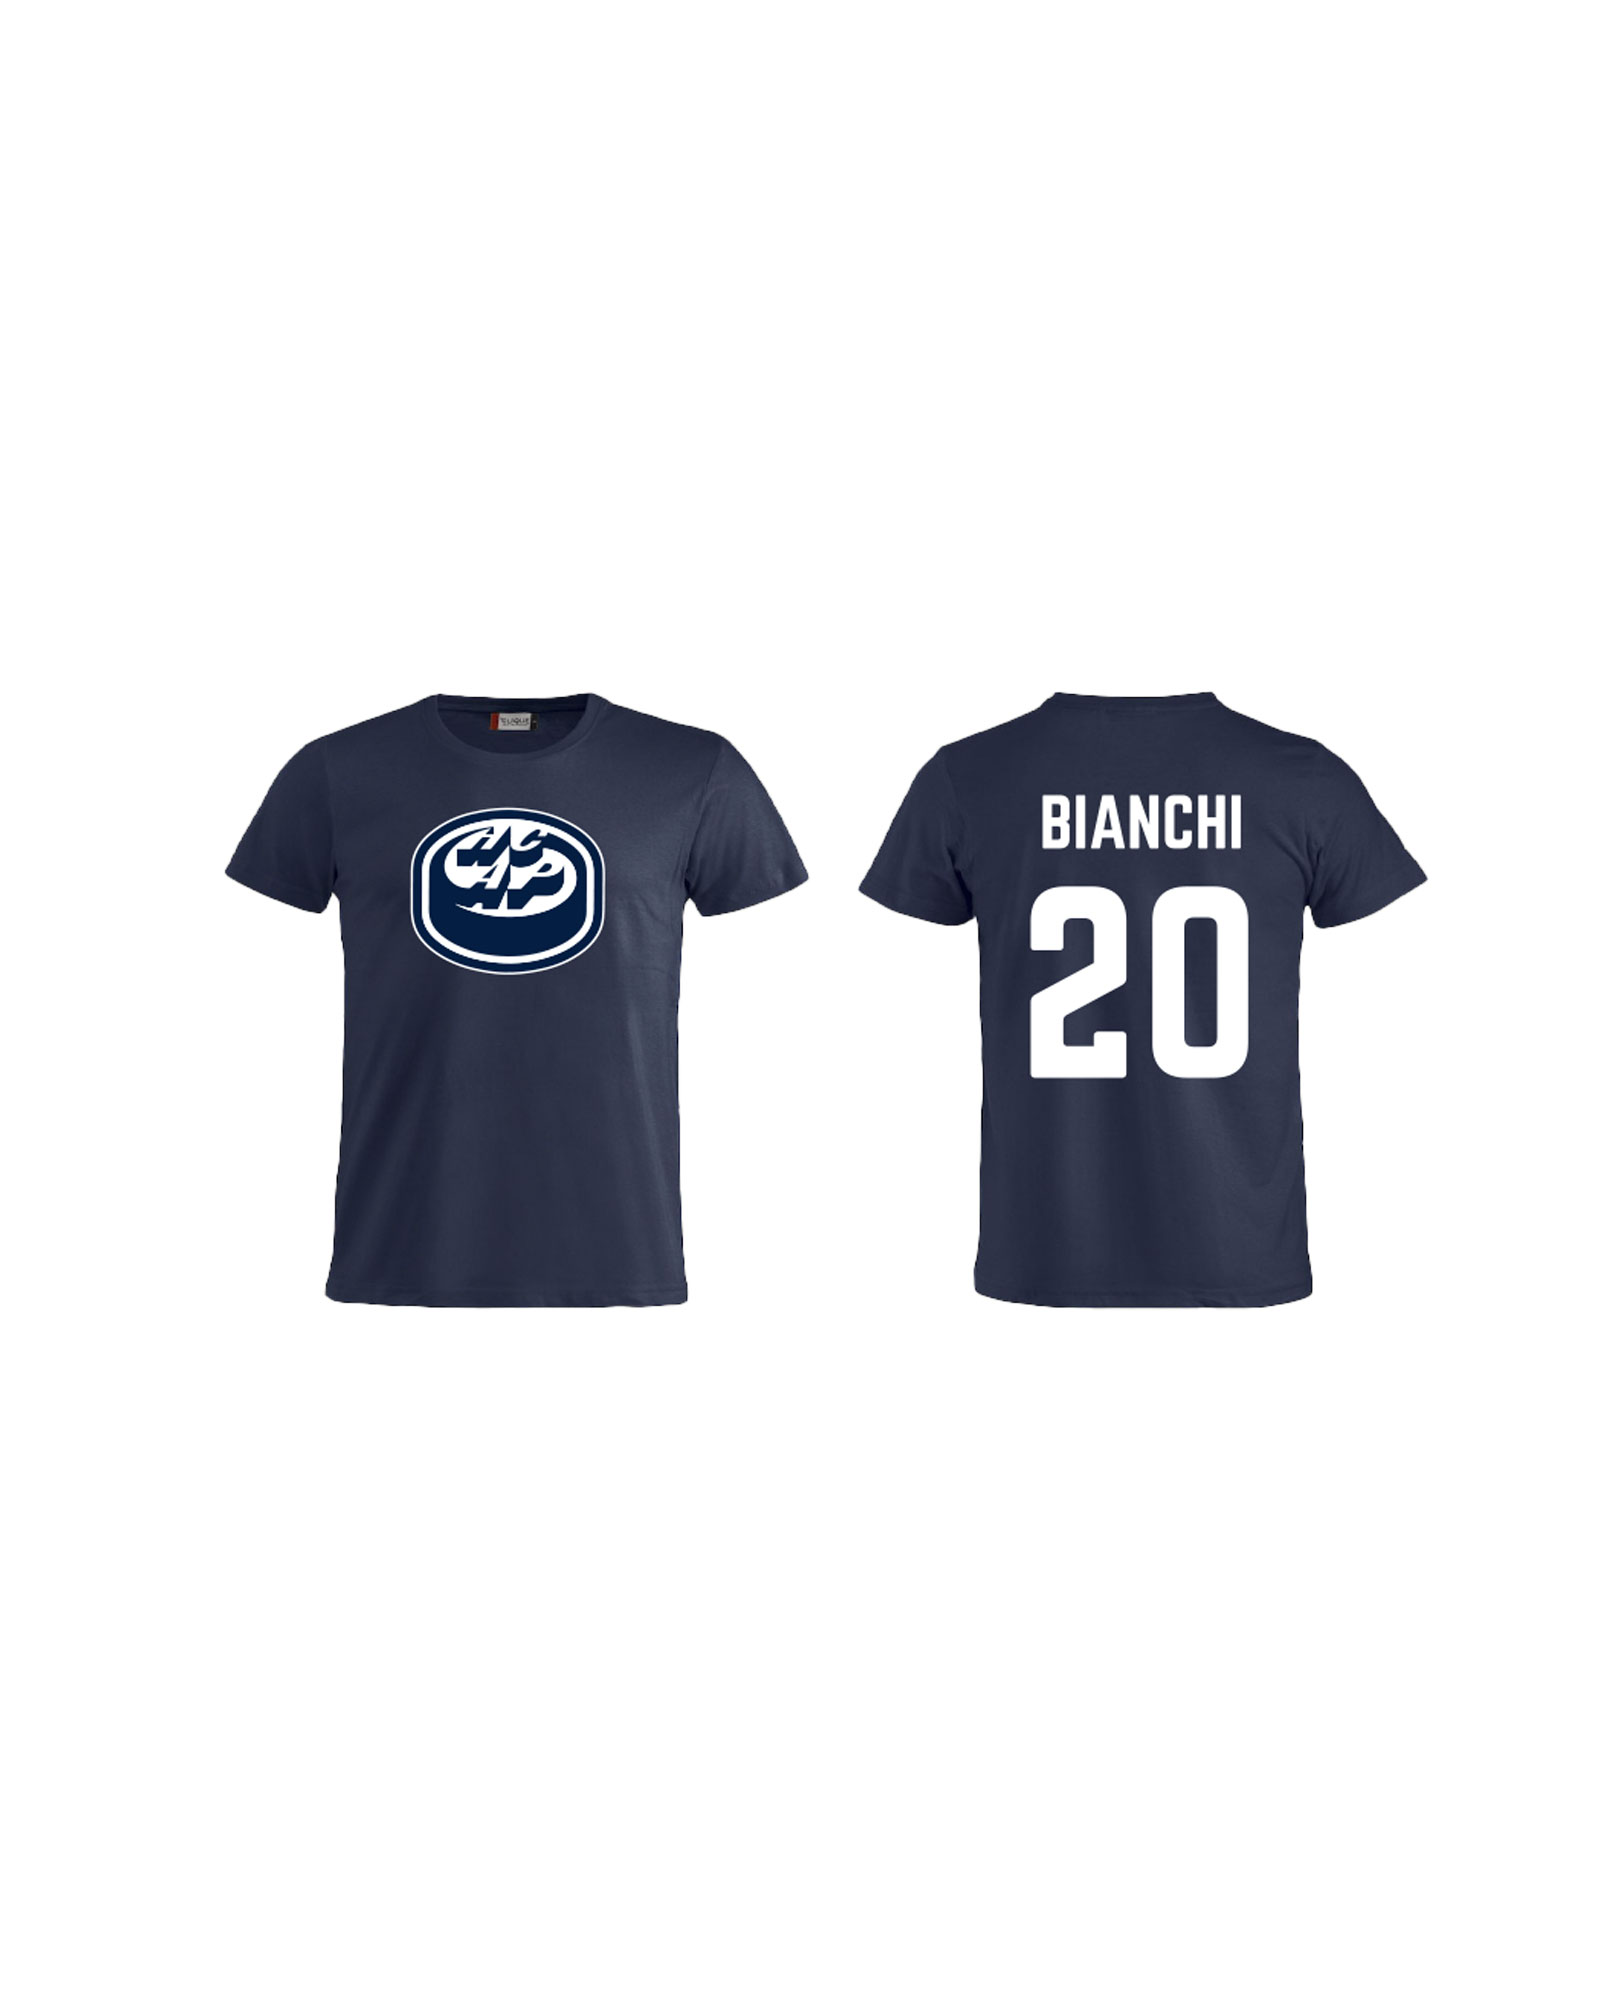 T-shirt #20 Bianchi